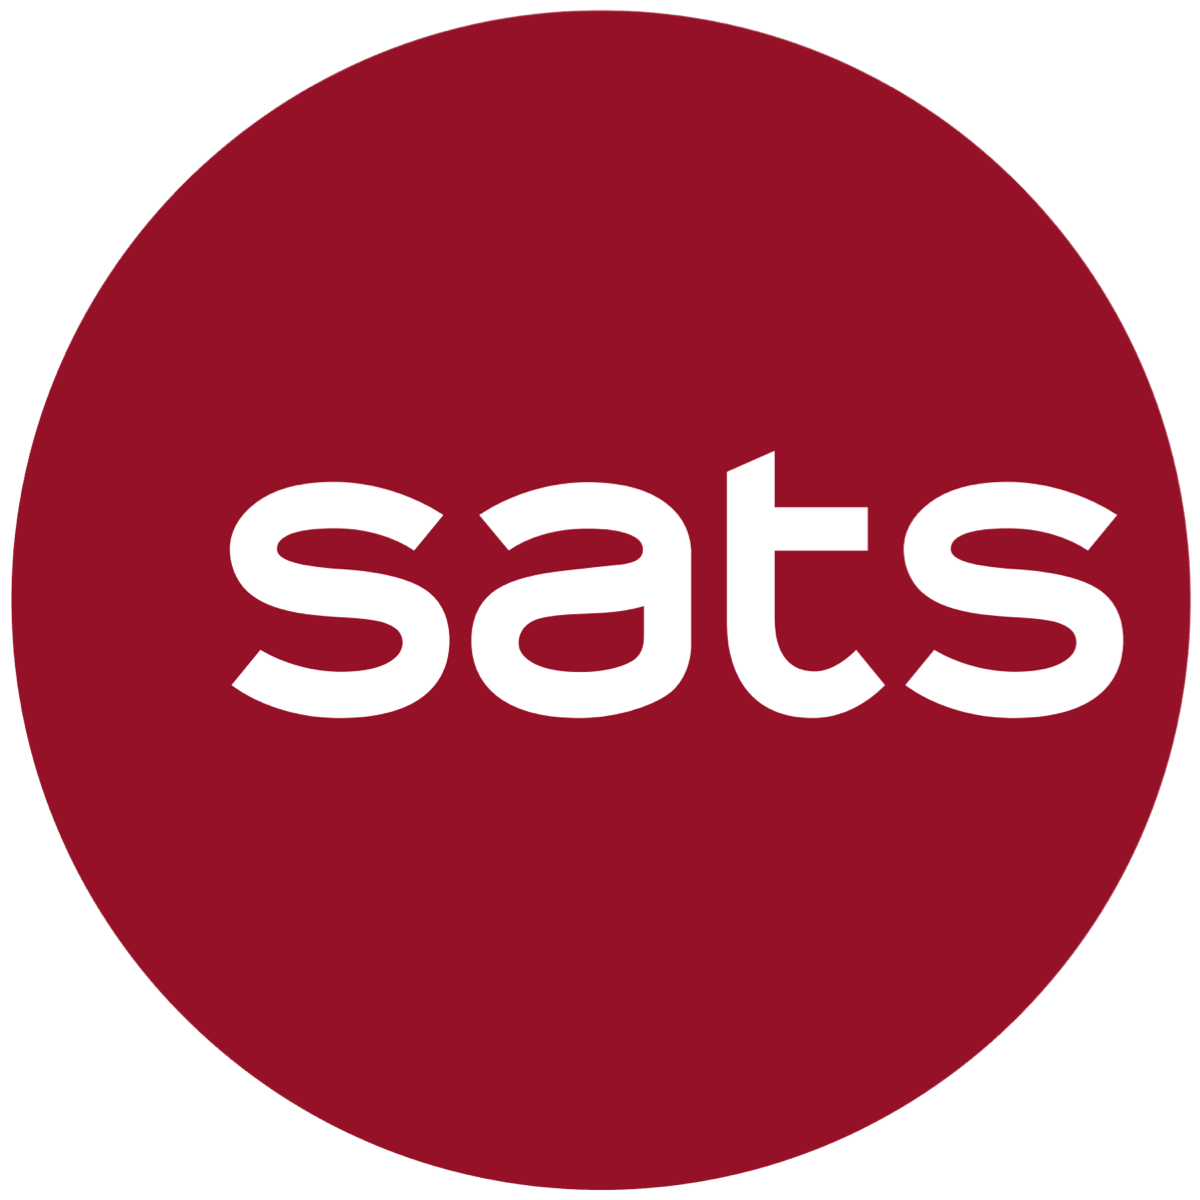 SATS (SATS SP) - Maybank Kim Eng 2017-05-22: 4Q17 A Miss But Outlook Better